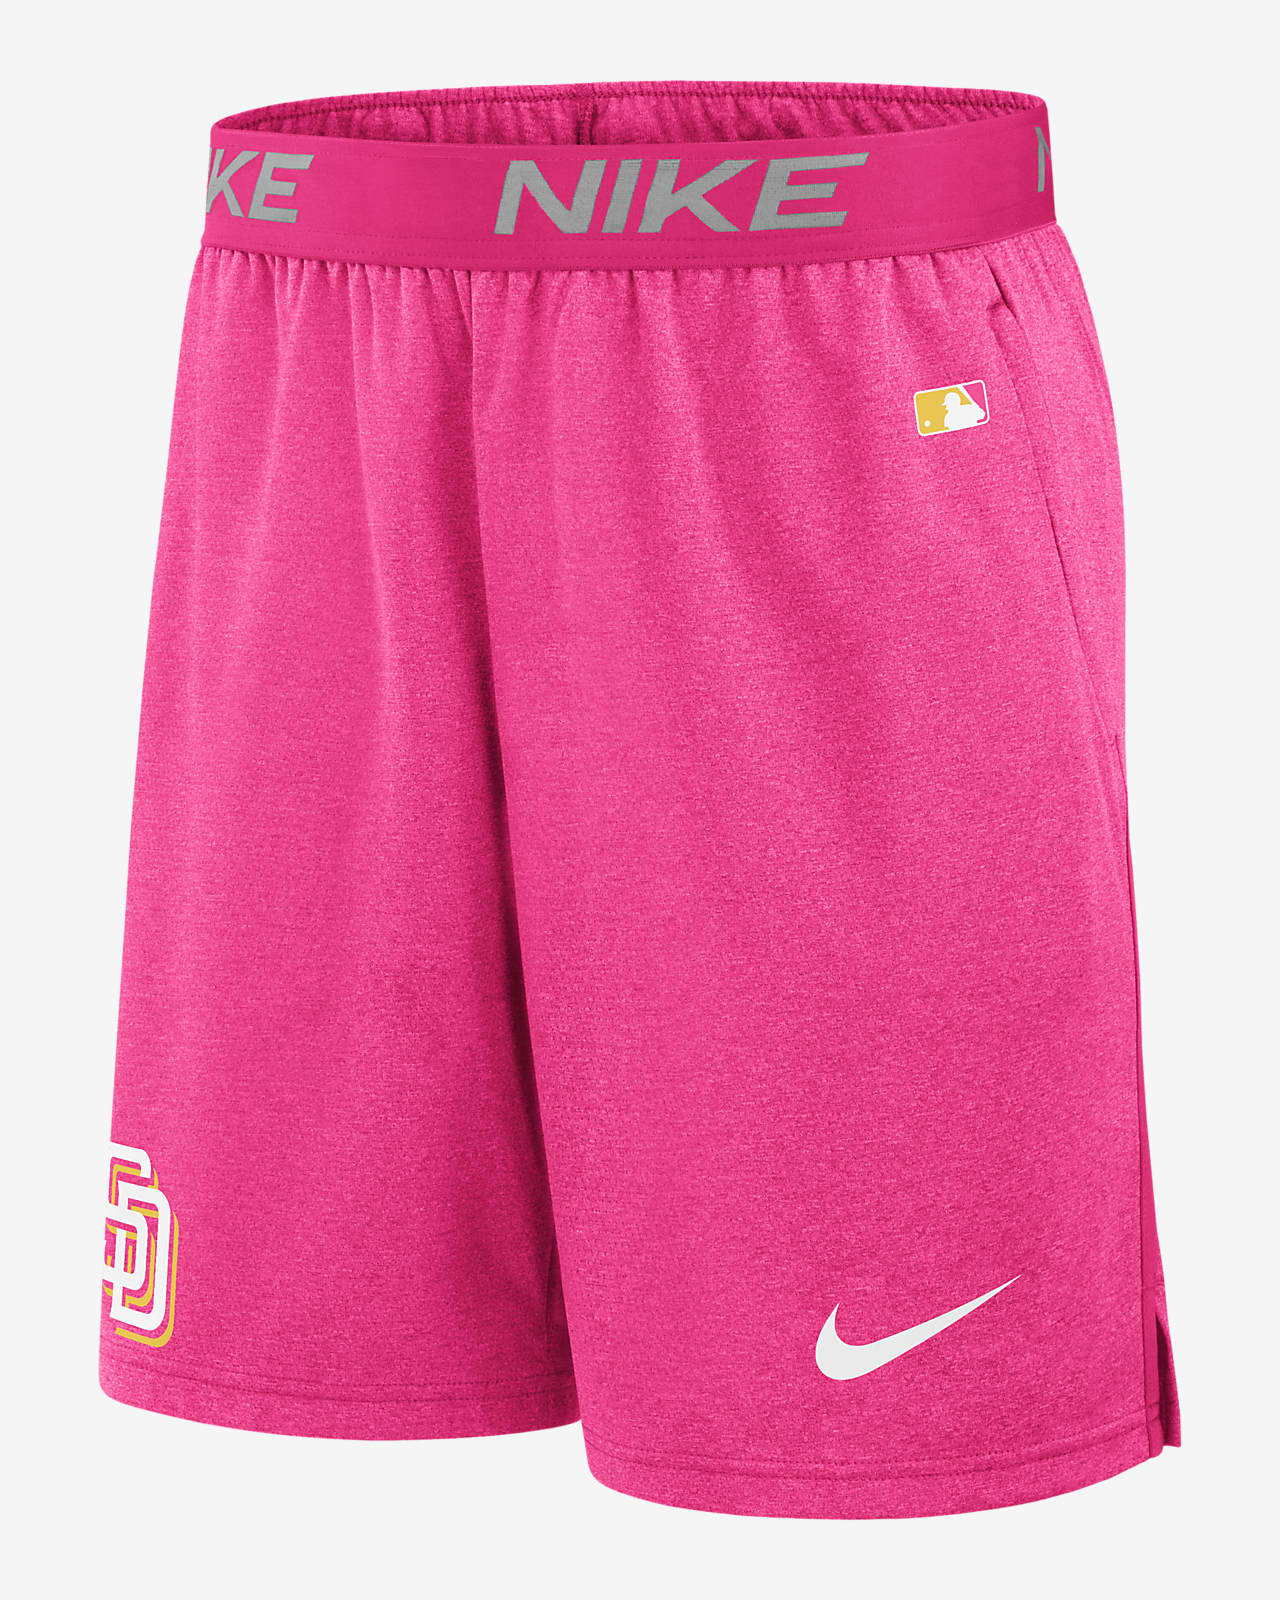 Shorts Nike Dri-FIT de la MLB para hombre San Diego Padres City Connect Practice